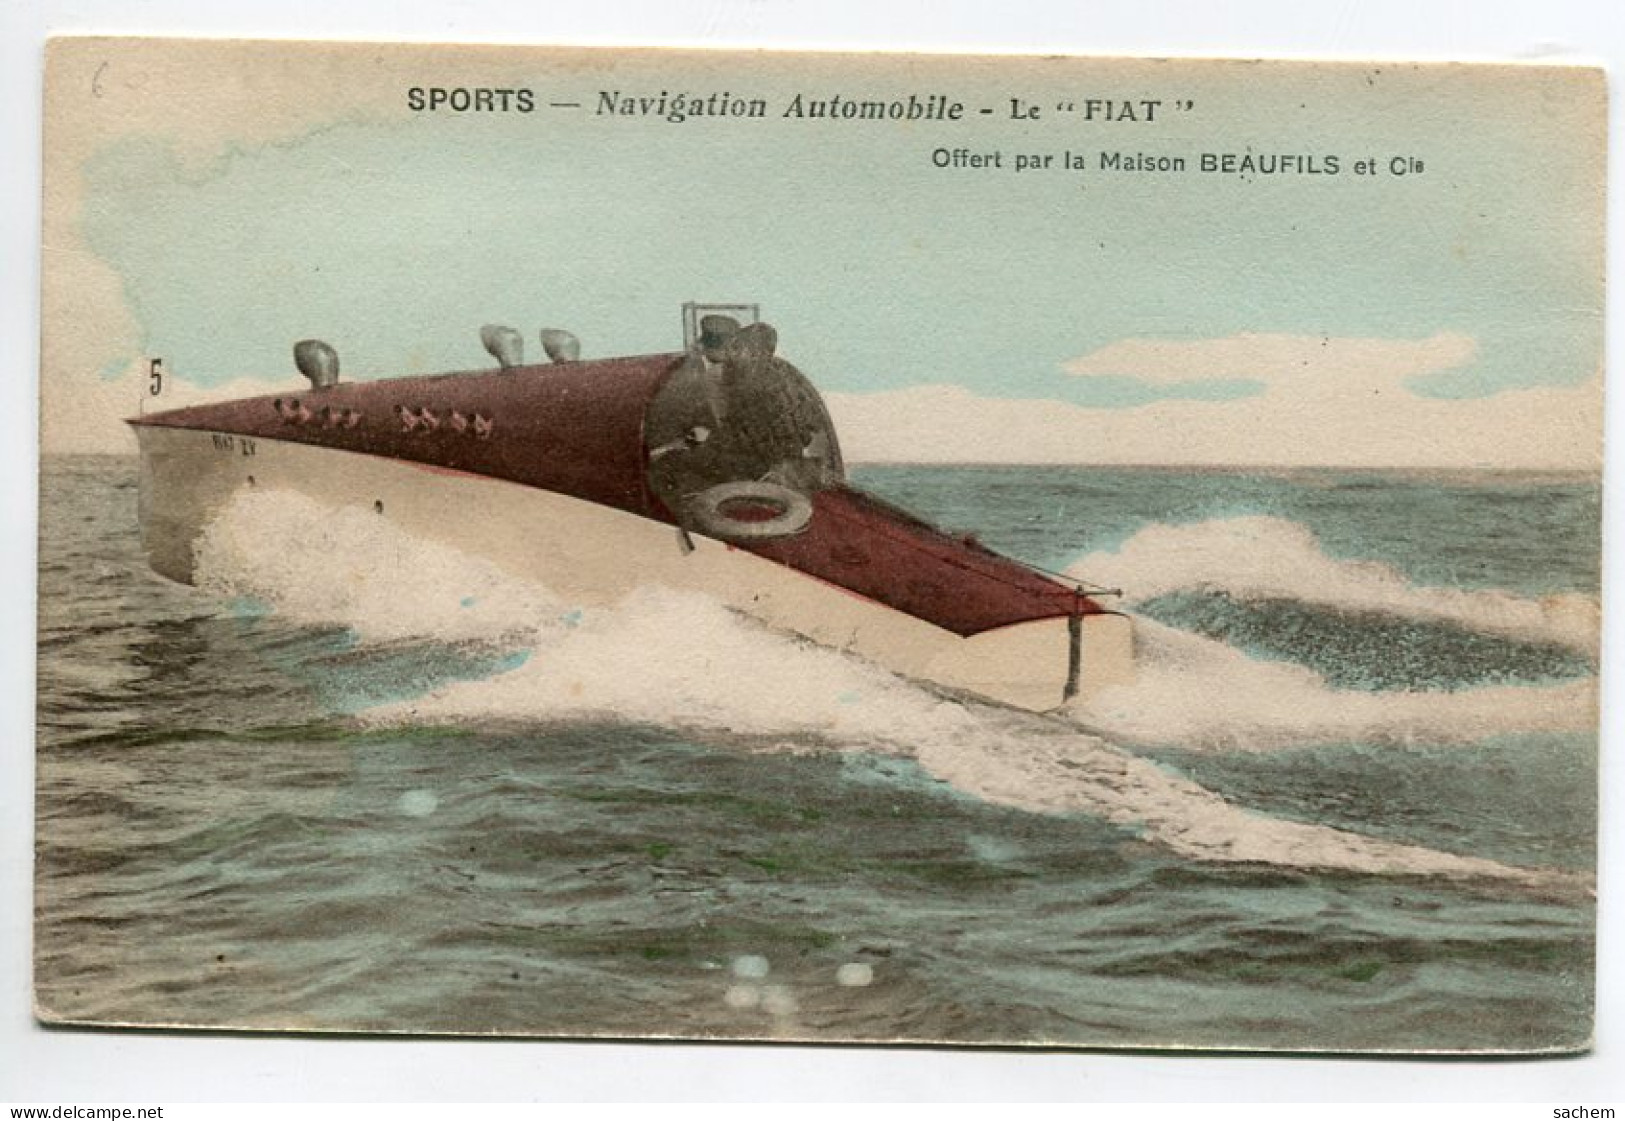 NAUTISME Navigation Automobile Le FIAT Canot De Course Couleur 1910   Sports  D19 2022  - Ski Nautique